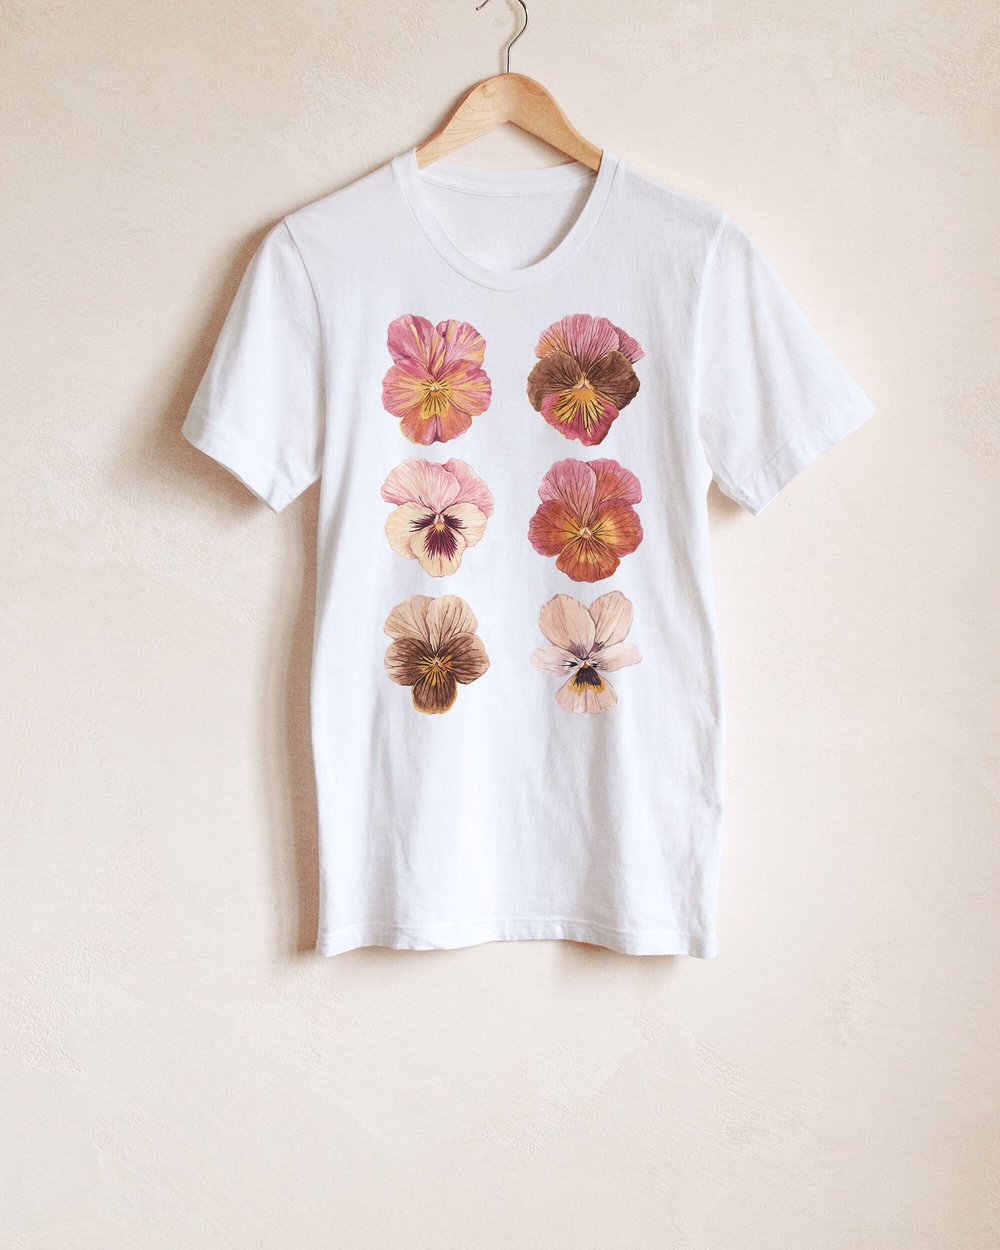 Flower T Shirt Flower Shirt Flower Top Floral Top Floral T 